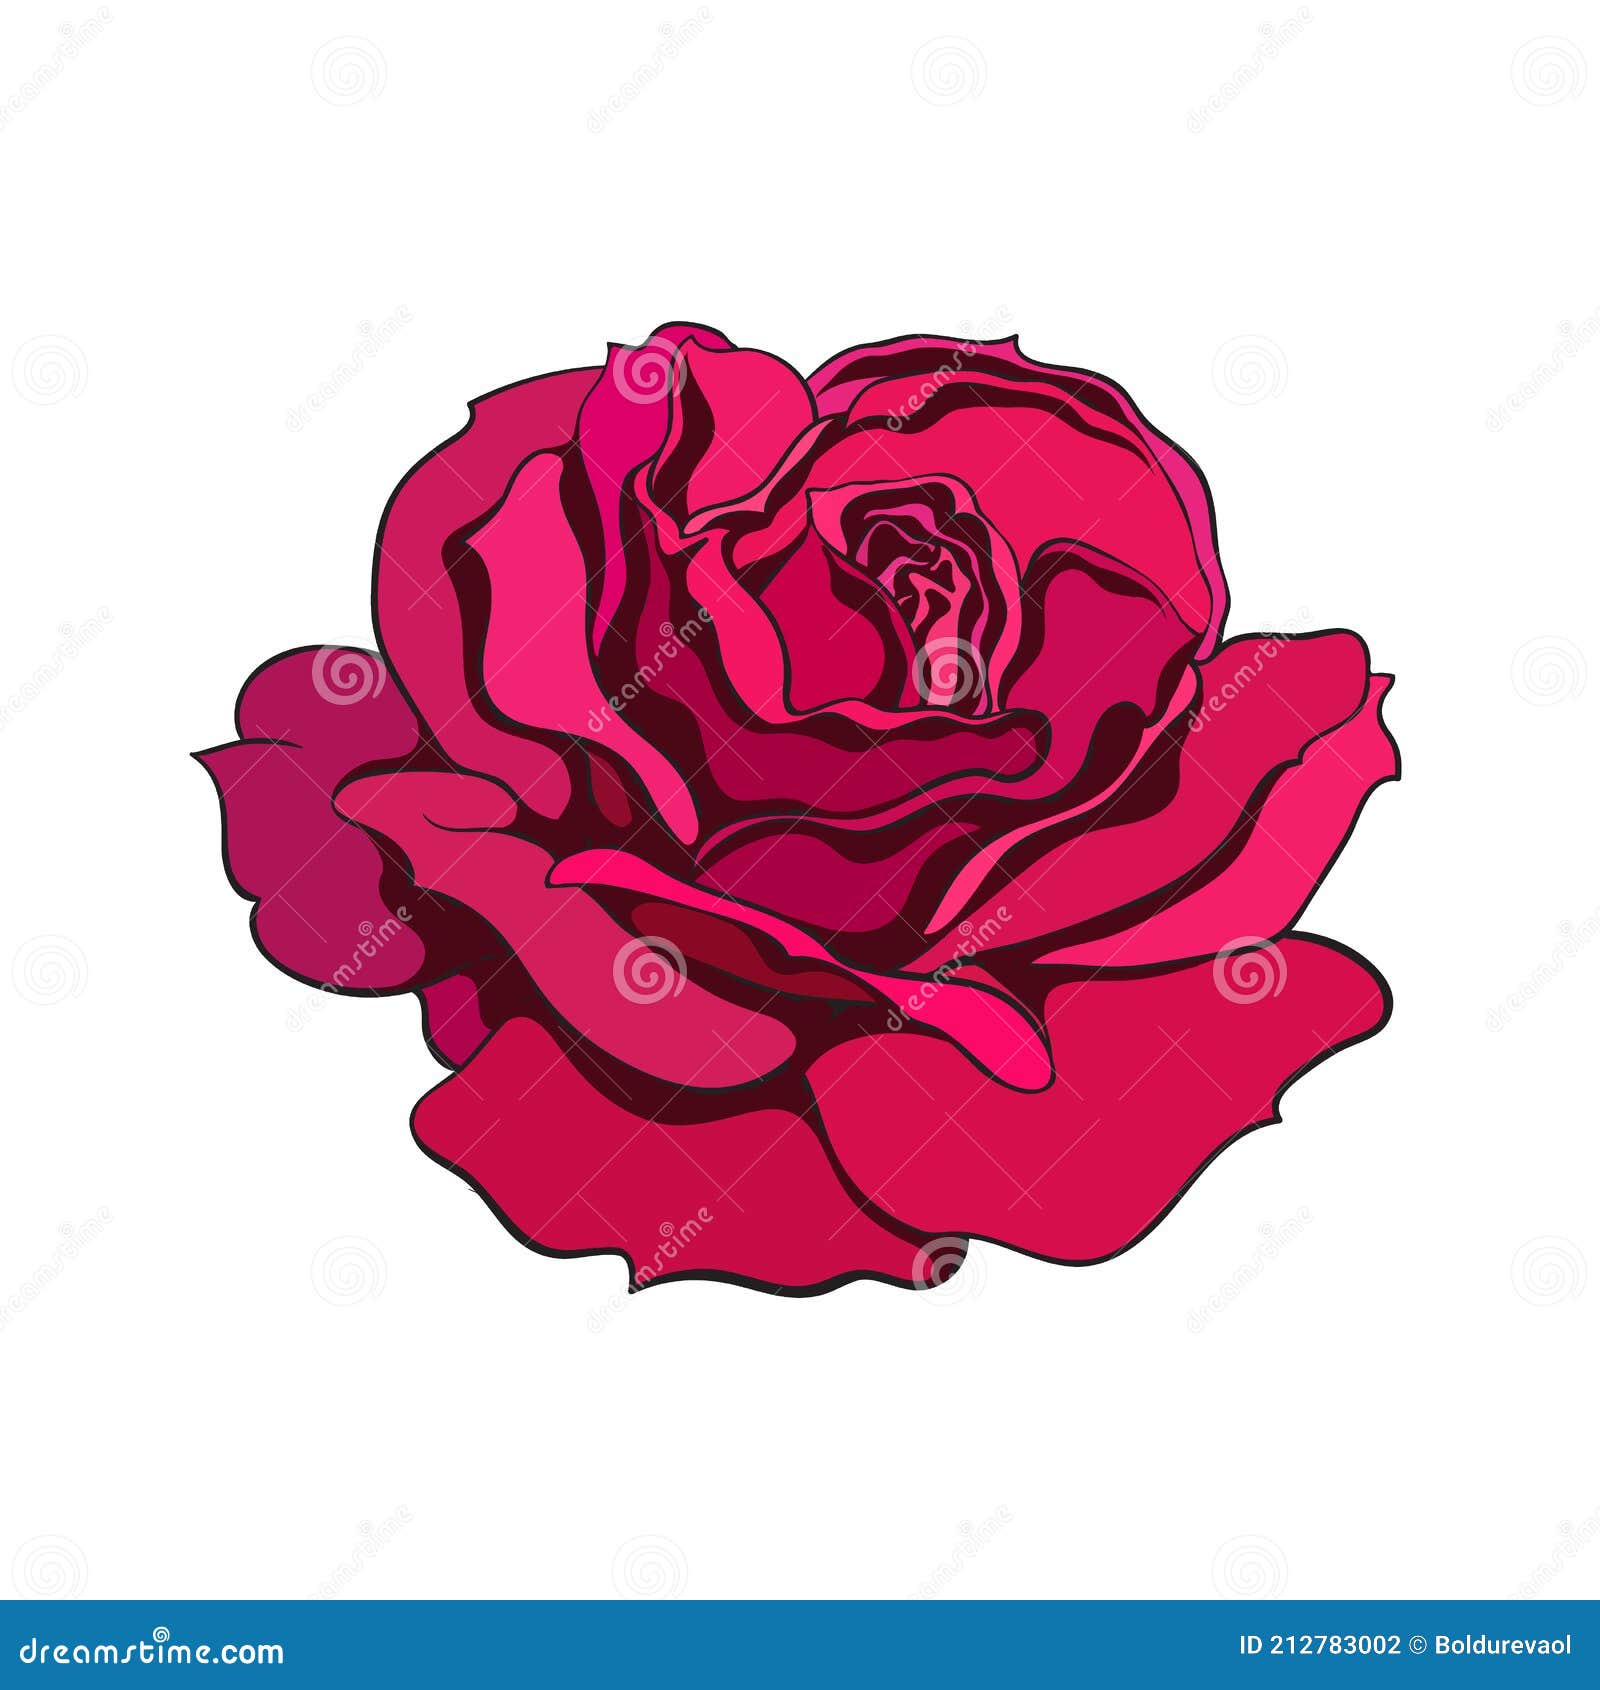 Inkversion on Twitter Fresh red rose hand tattoo using elgatonegrotatt  handtattoo redrose rosetattoo httpstcoSm0acz97qu  Twitter